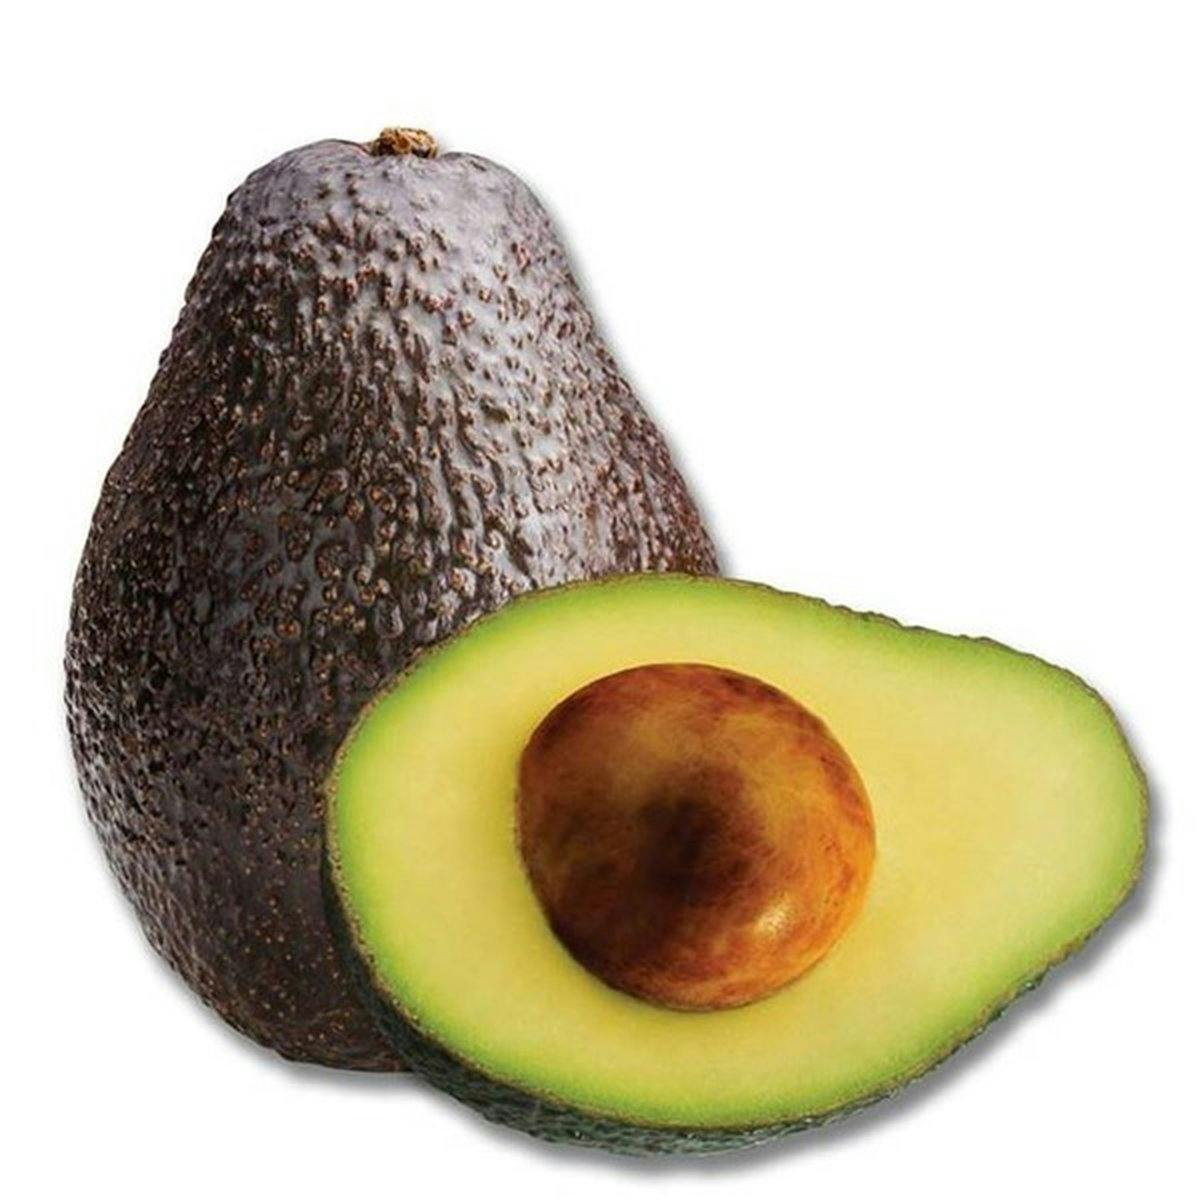 avocado (1 large avo)